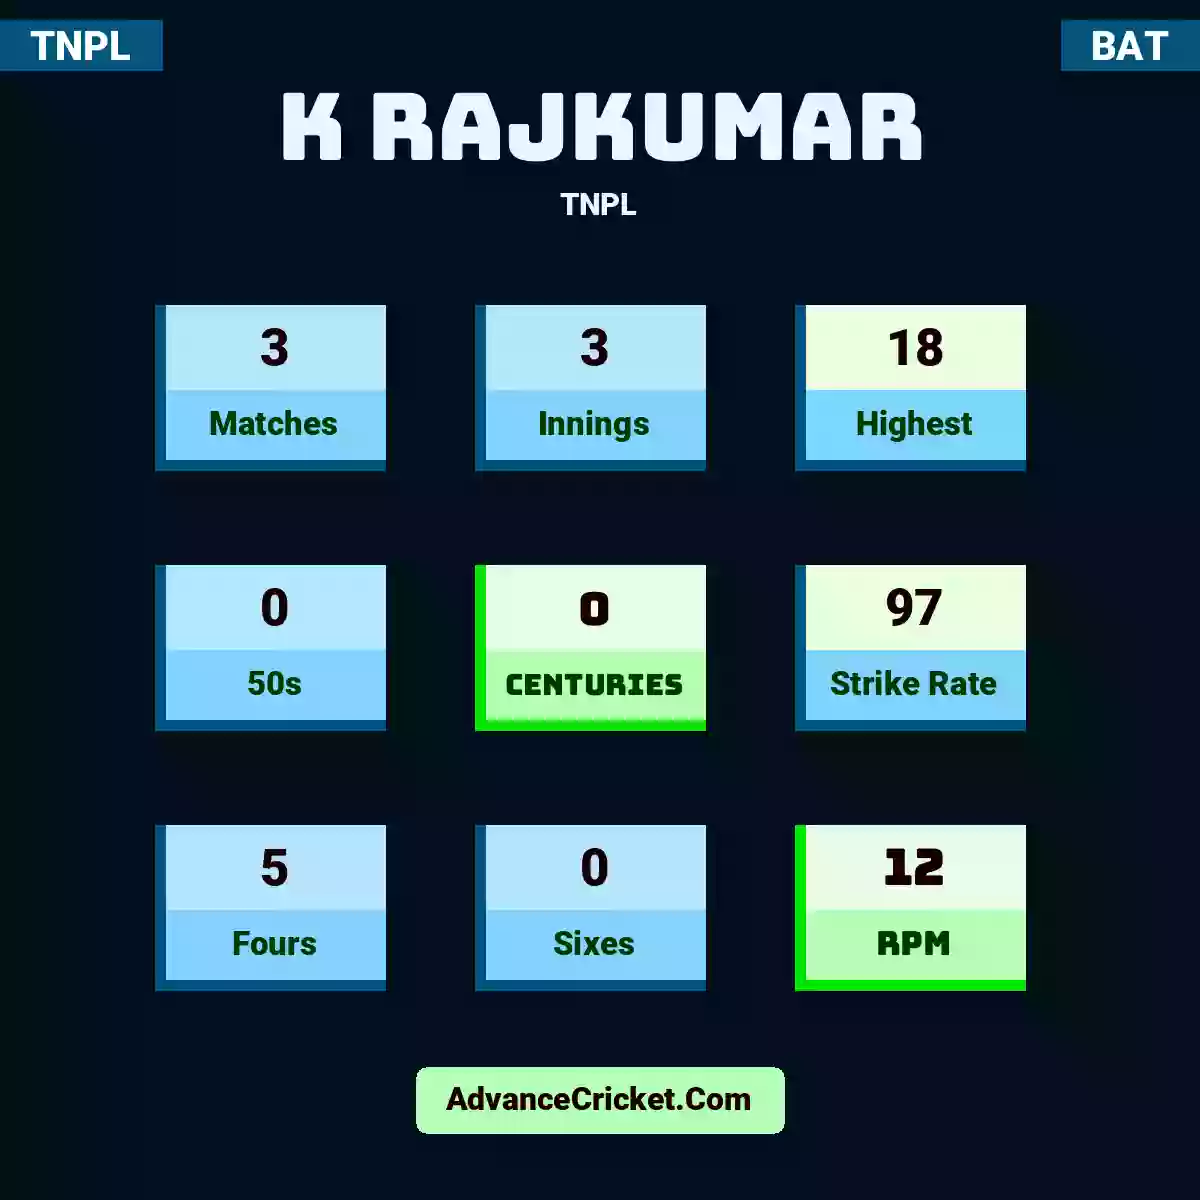 K Rajkumar TNPL , K Rajkumar played 3 matches, scored 18 runs as highest, 0 half-centuries, and 0 centuries, with a strike rate of 97. K.Rajkumar hit 5 fours and 0 sixes, with an RPM of 12.